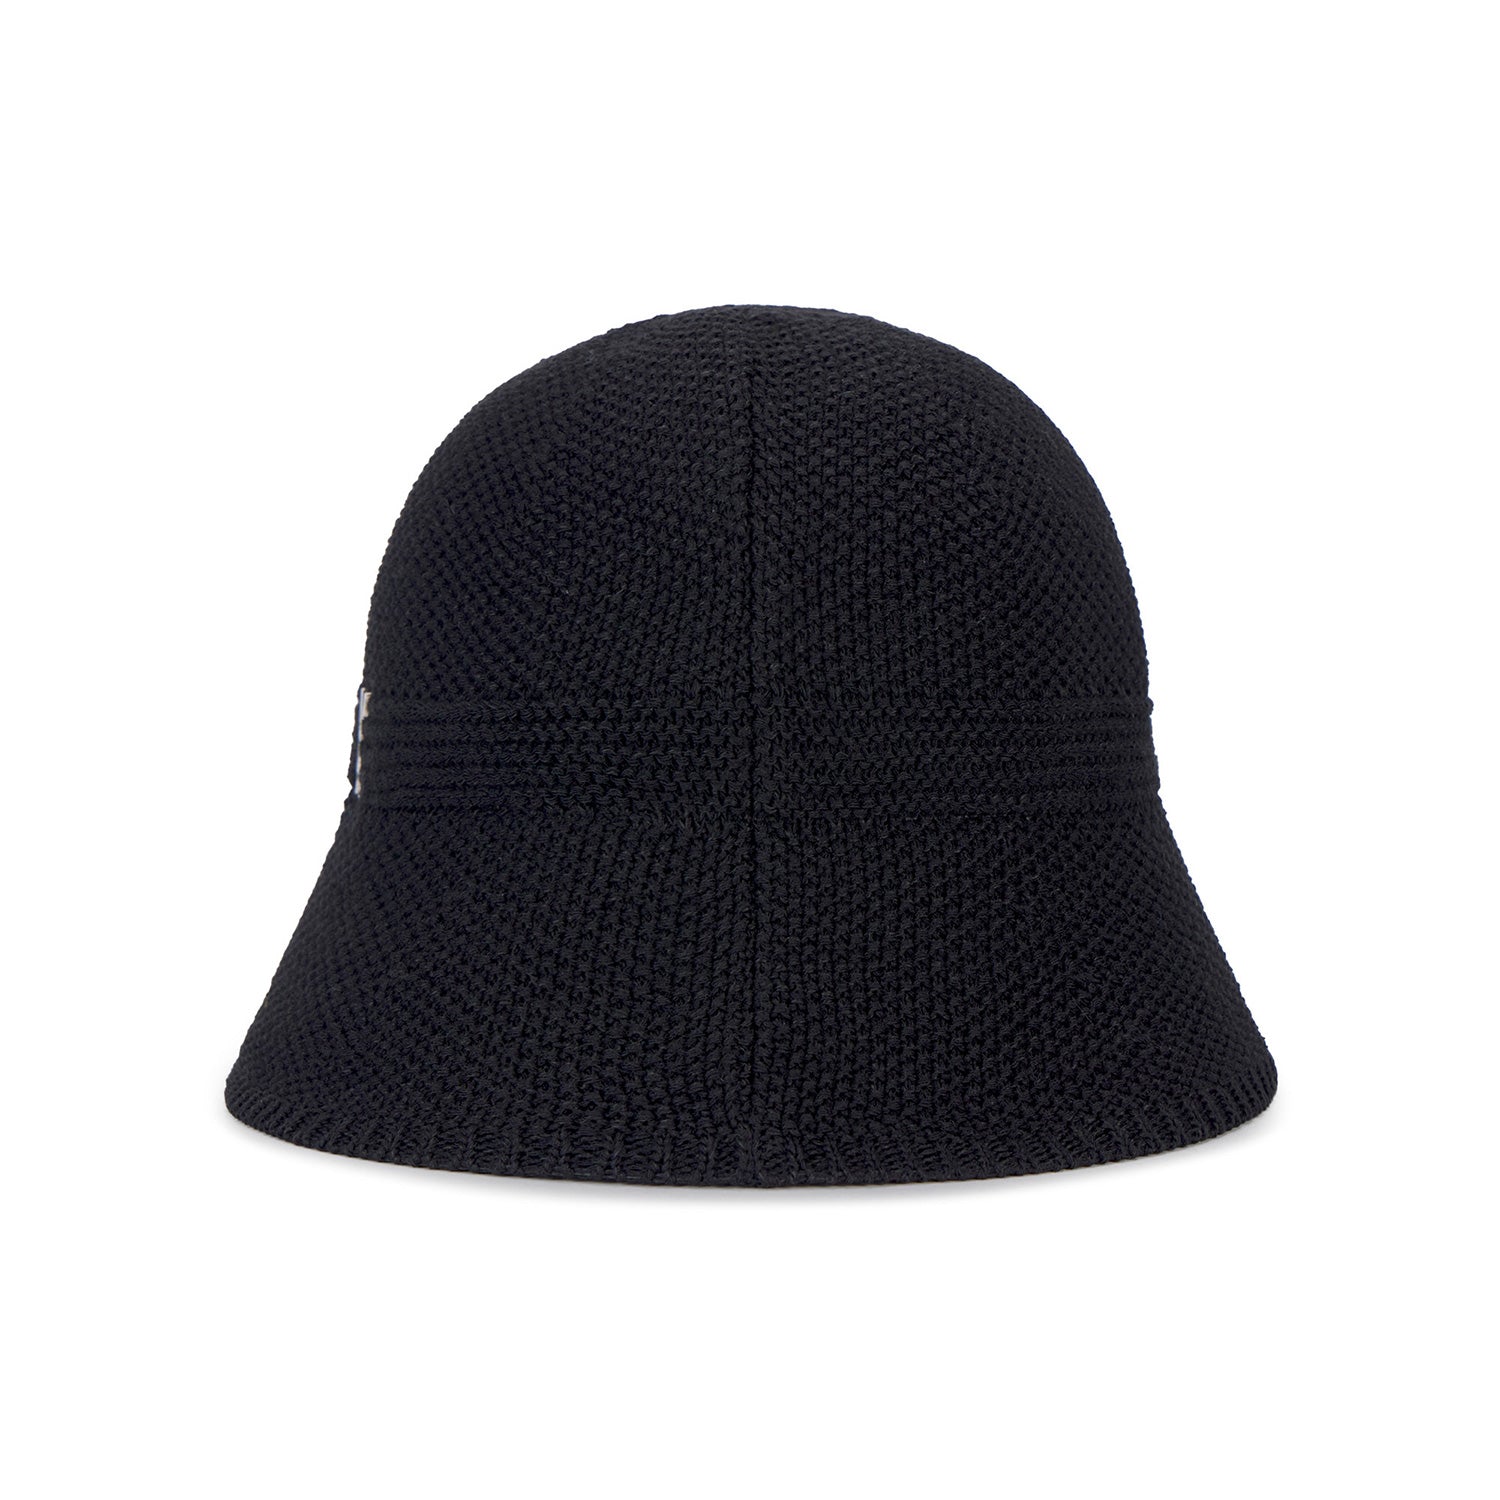 Stud logo summer knit bucket hat Black